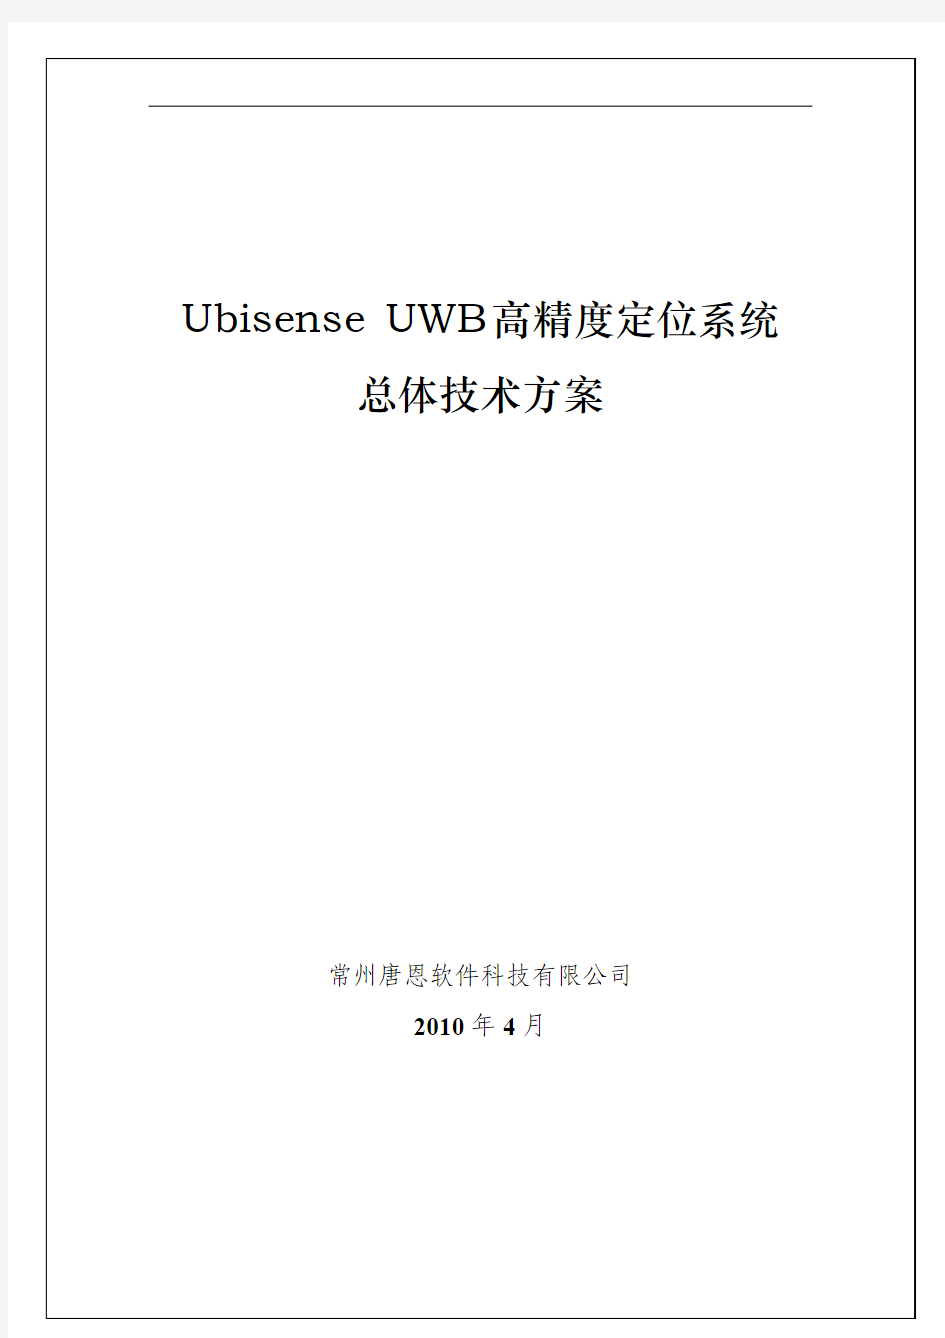 UWB高精度定位系统--总体技术方案V1_3